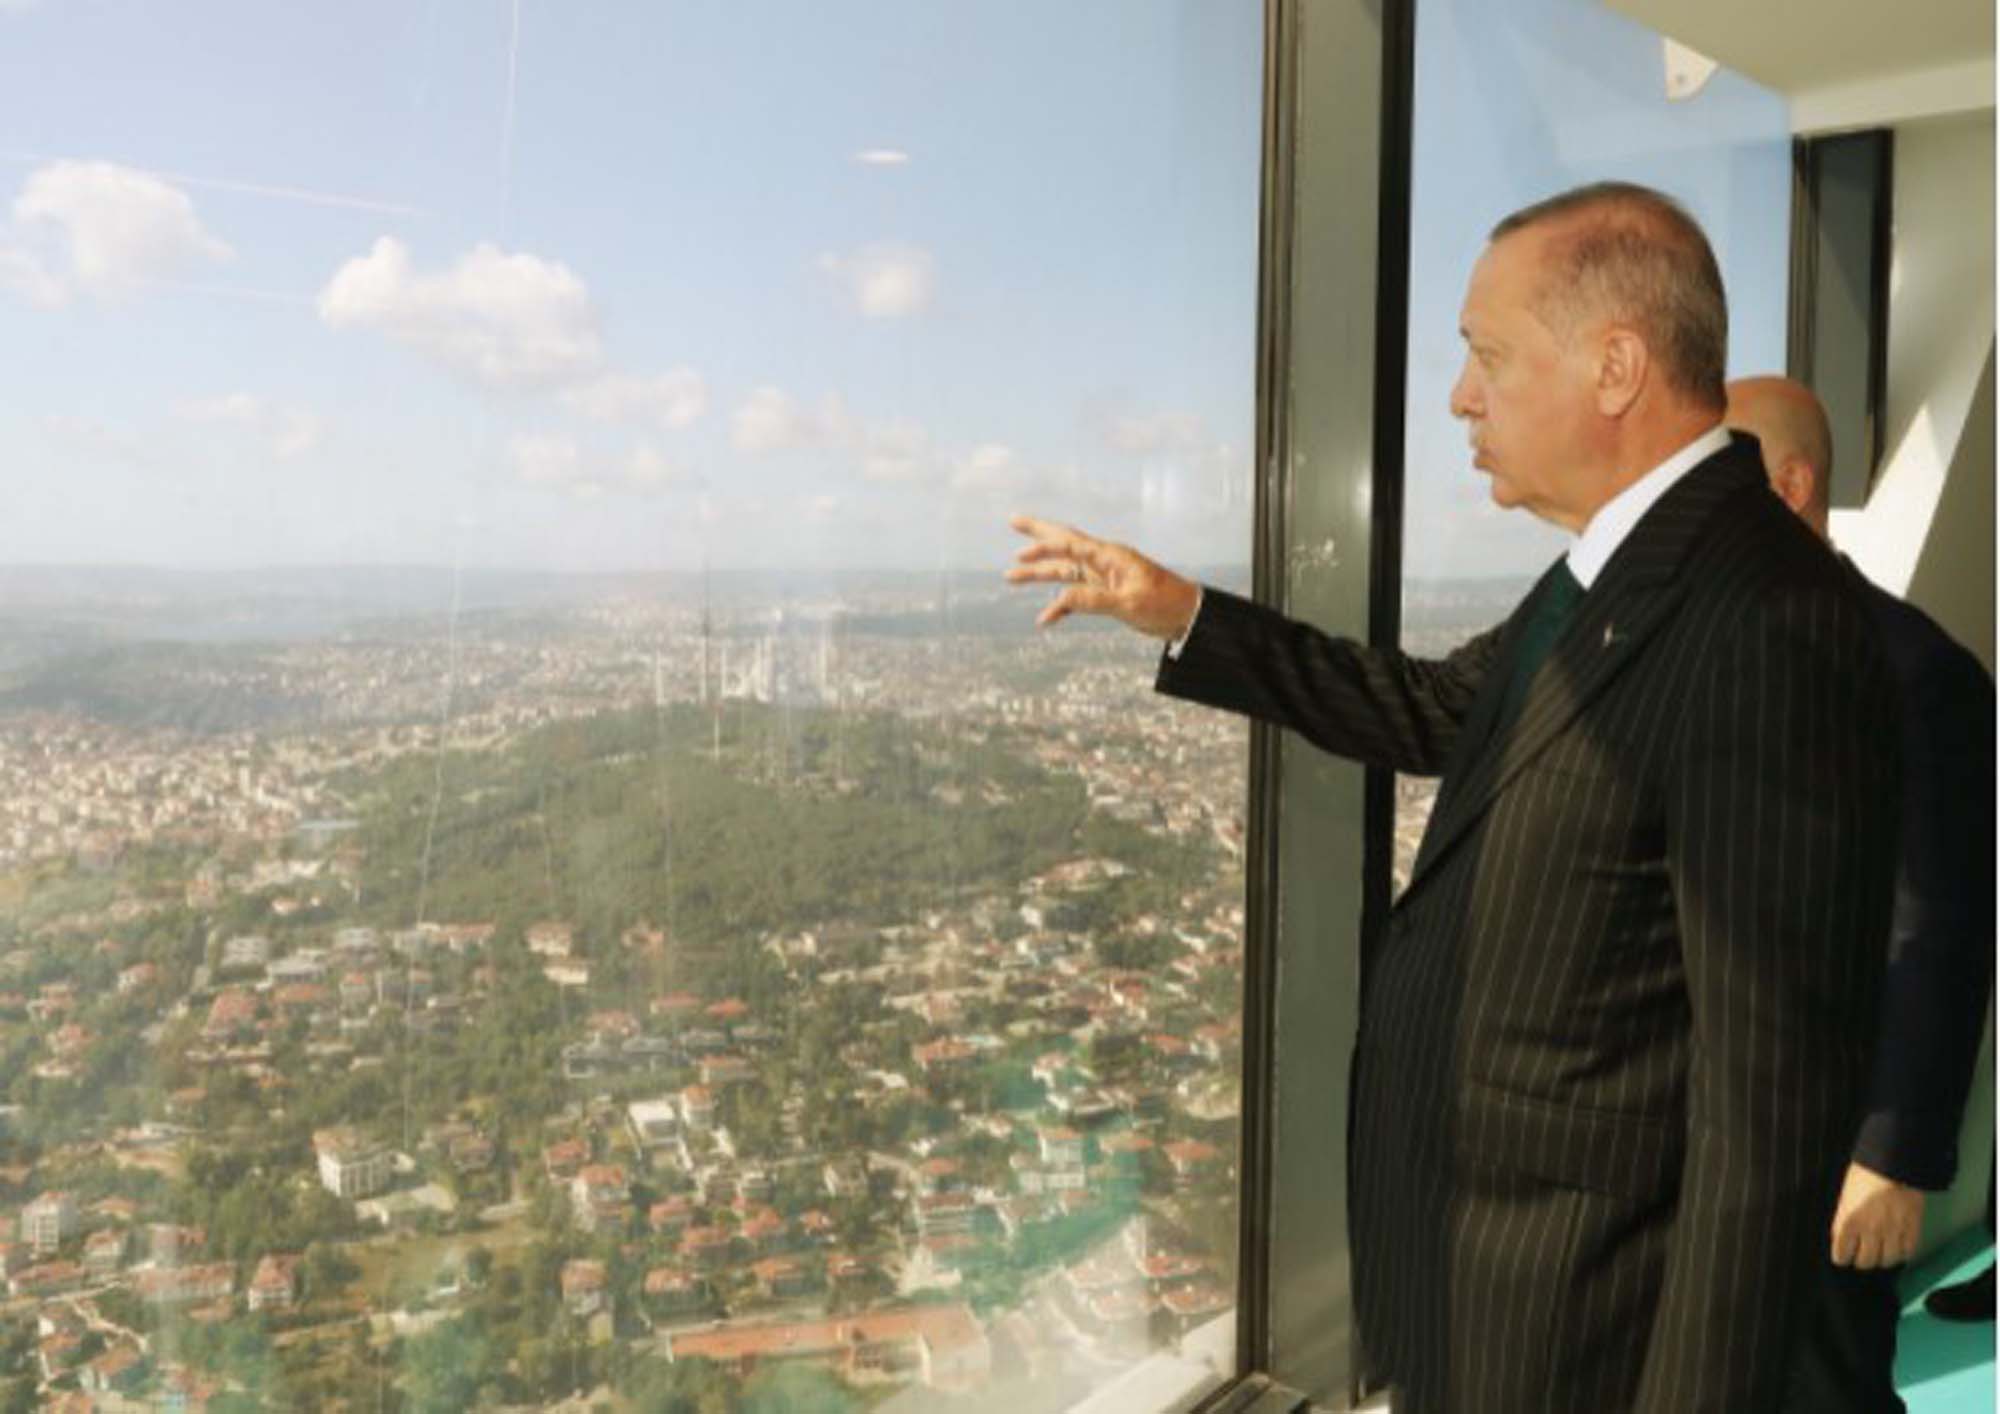 Bakan Soylu, Cumhurbaşkanı Erdoğan'ın evini fotoğraflayan İsrailli çift hakkında ilk kez konuştu!